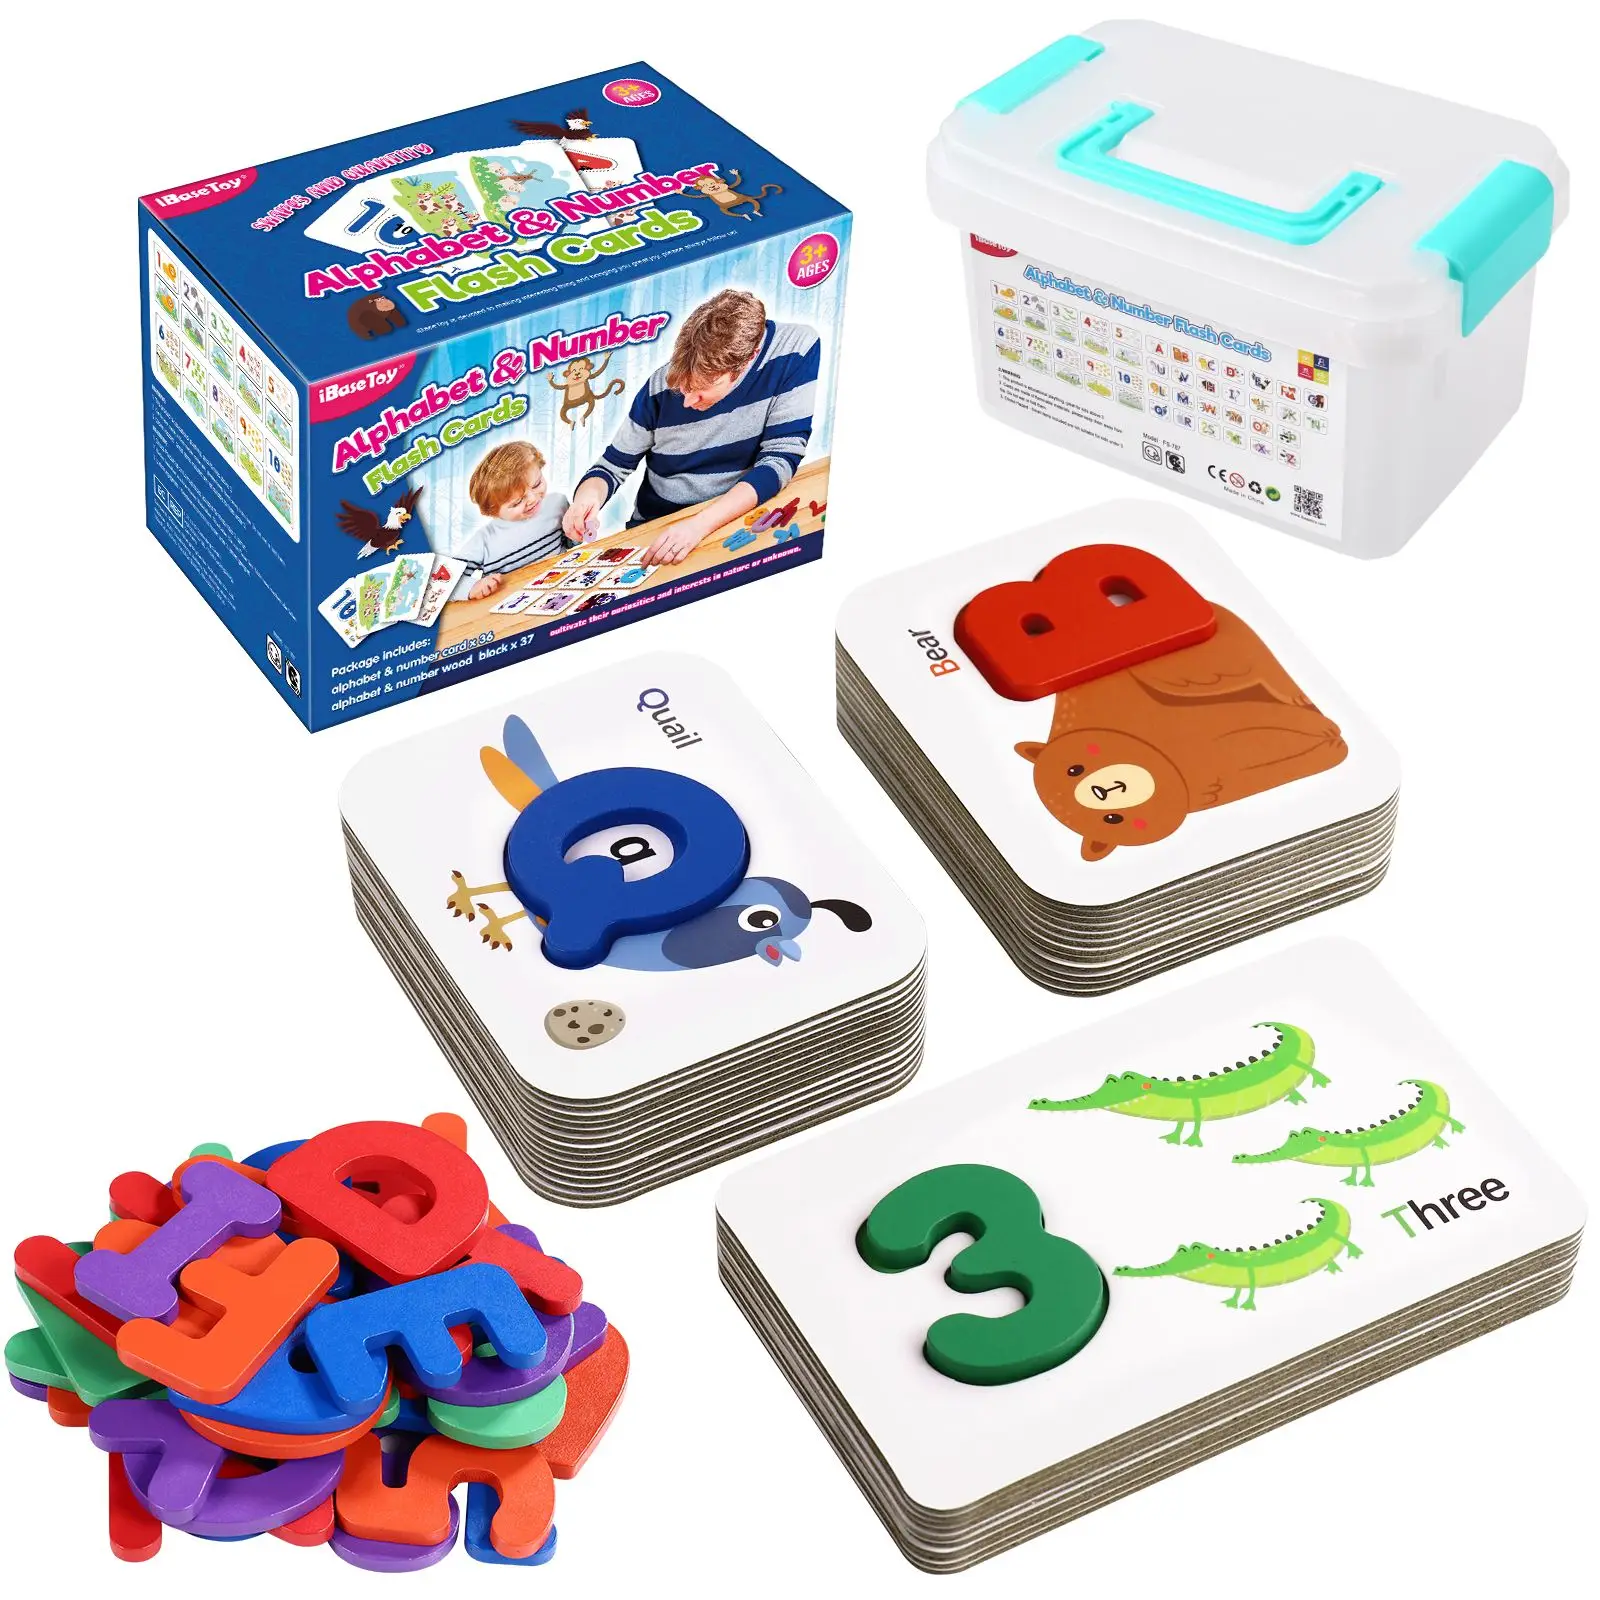 Tarjetas Flash con números del alfabeto Montessori, bloques de madera, tarjetas de aprendizaje de palabras de ortografía, juguetes educativos para niños pequeños